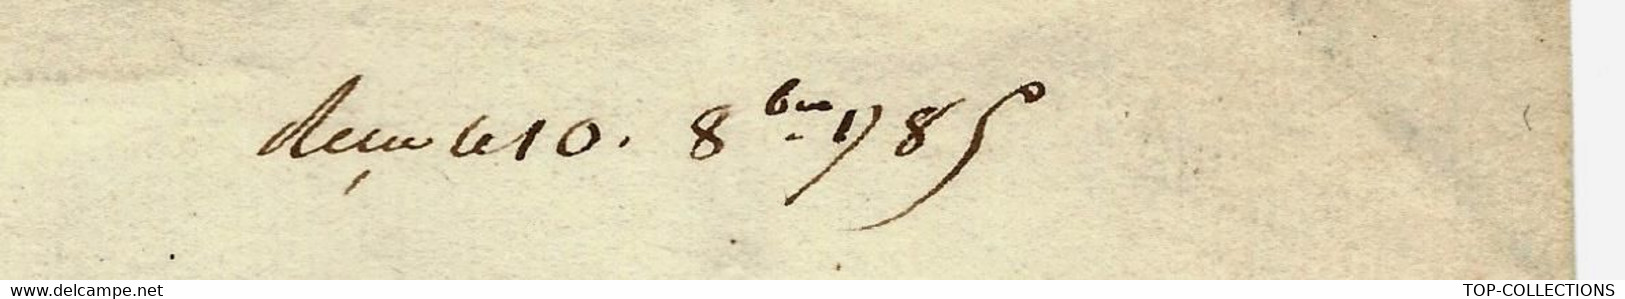 1785 De Cohenhague Danemark COMPAGNIE DANOISE DES INDES COPENHAGUE Lettre Signée Pour FOACHE LE HAVRE - Historische Dokumente